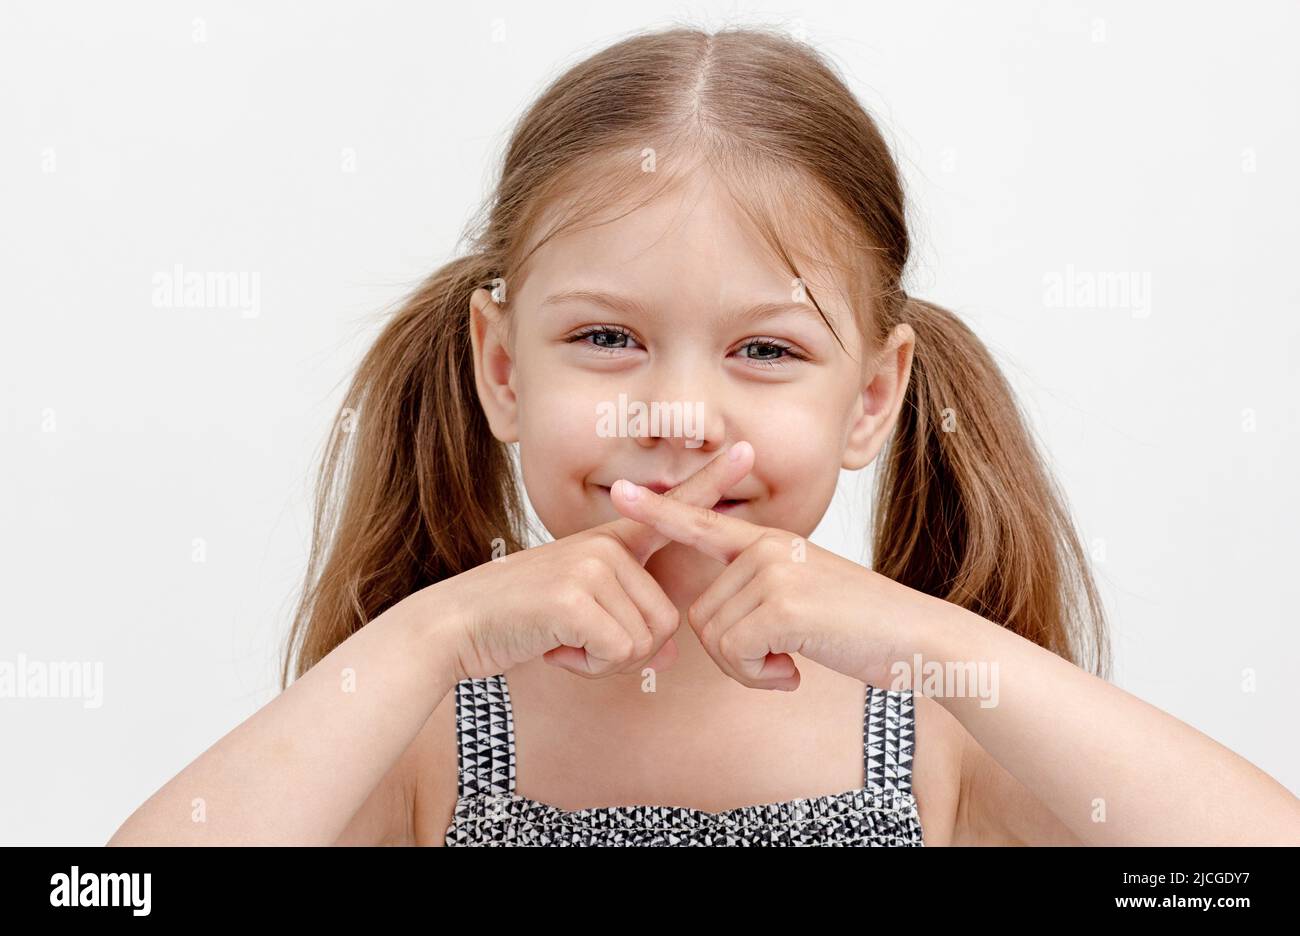 Kaukasisches lächelndes kleines Mädchen von 6 Jahren, das gekreuzte Finger auf dem Mund hält und Schwierigkeiten beim Sprechen zeigt, da es zu Unfähigkeit führt, die Muskeln zu kontrollieren U Stockfoto